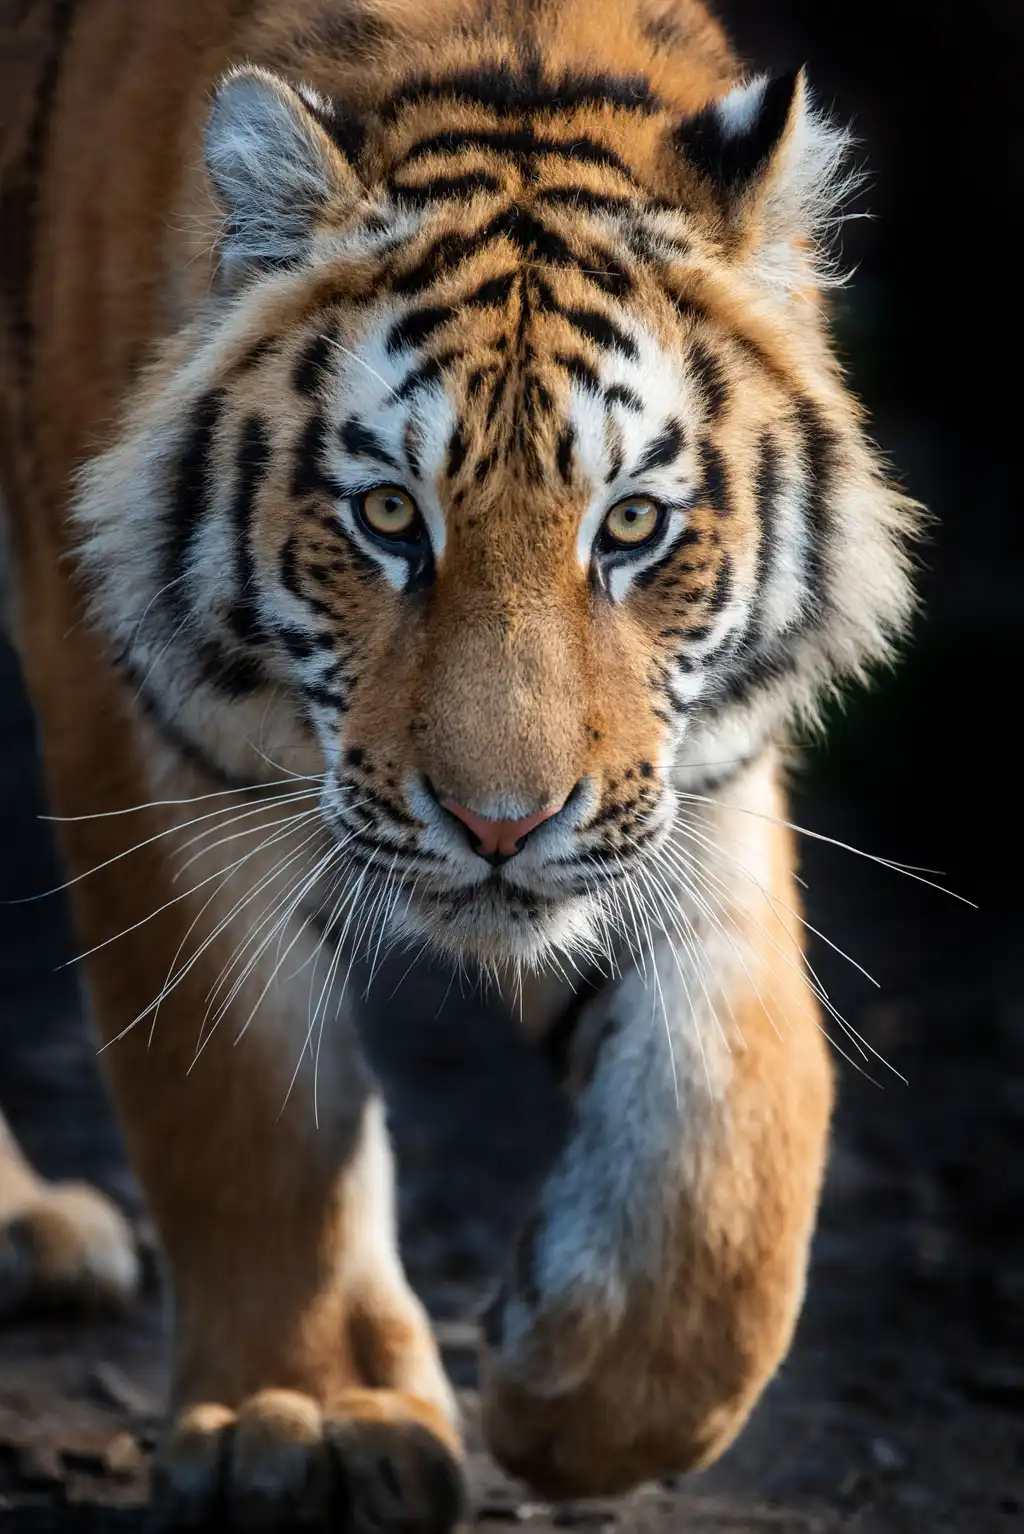 Tiger portrait picture